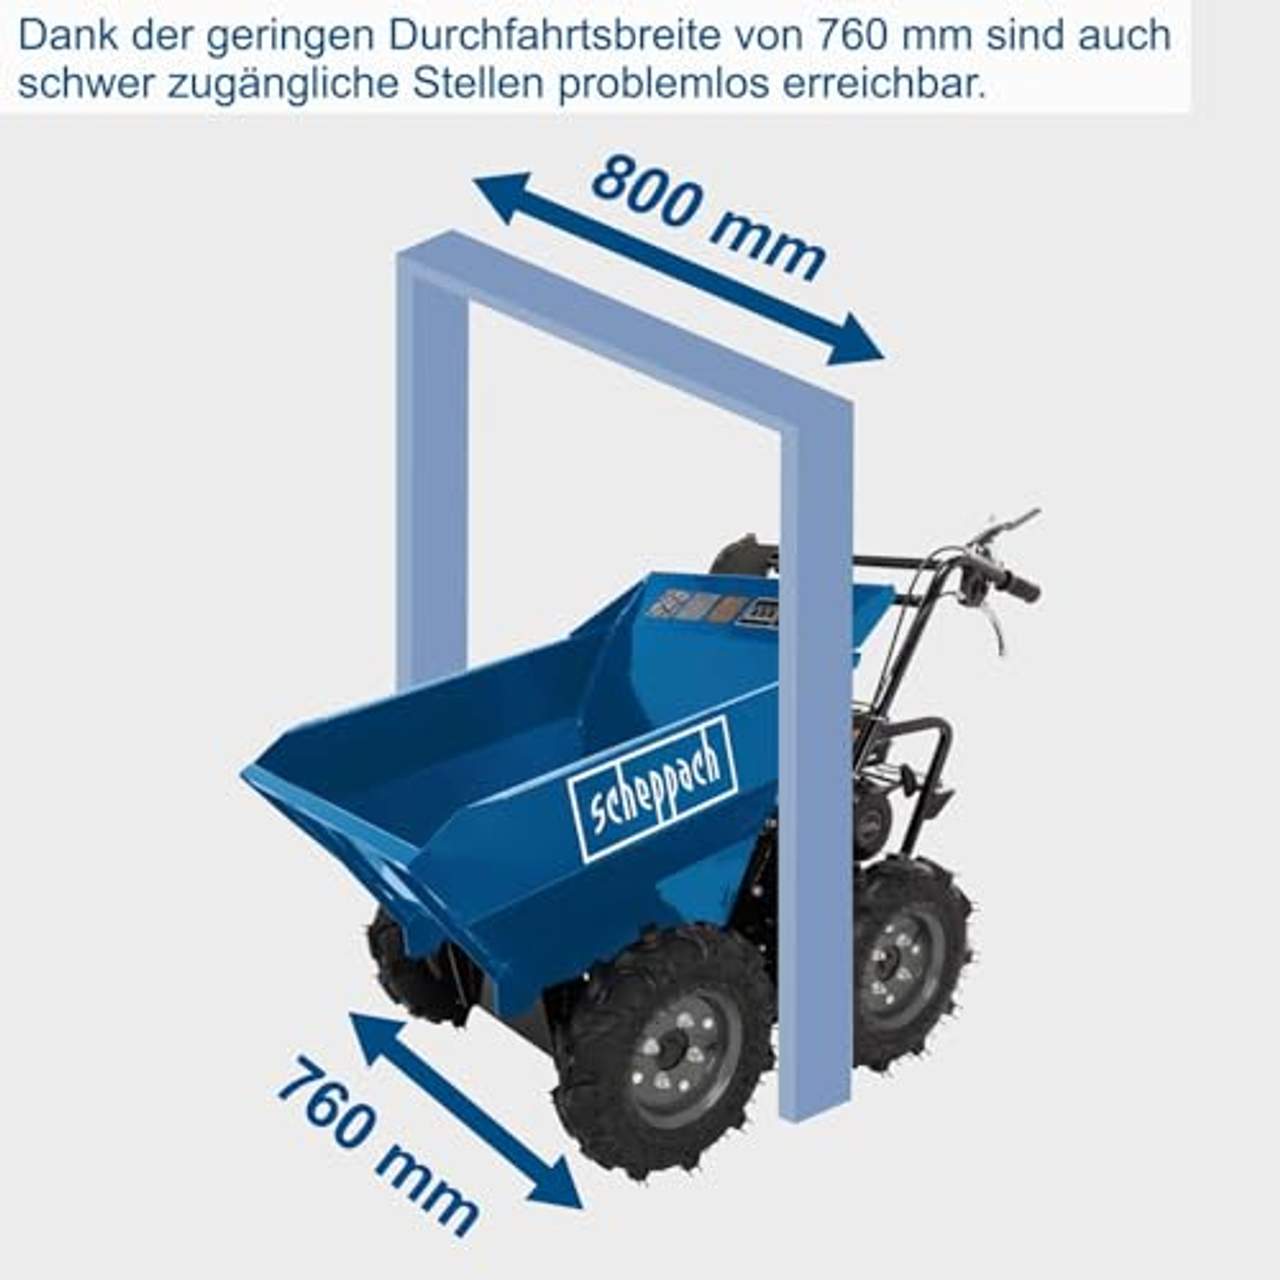 Scheppach Benzin-Dumper DP3000 300kg